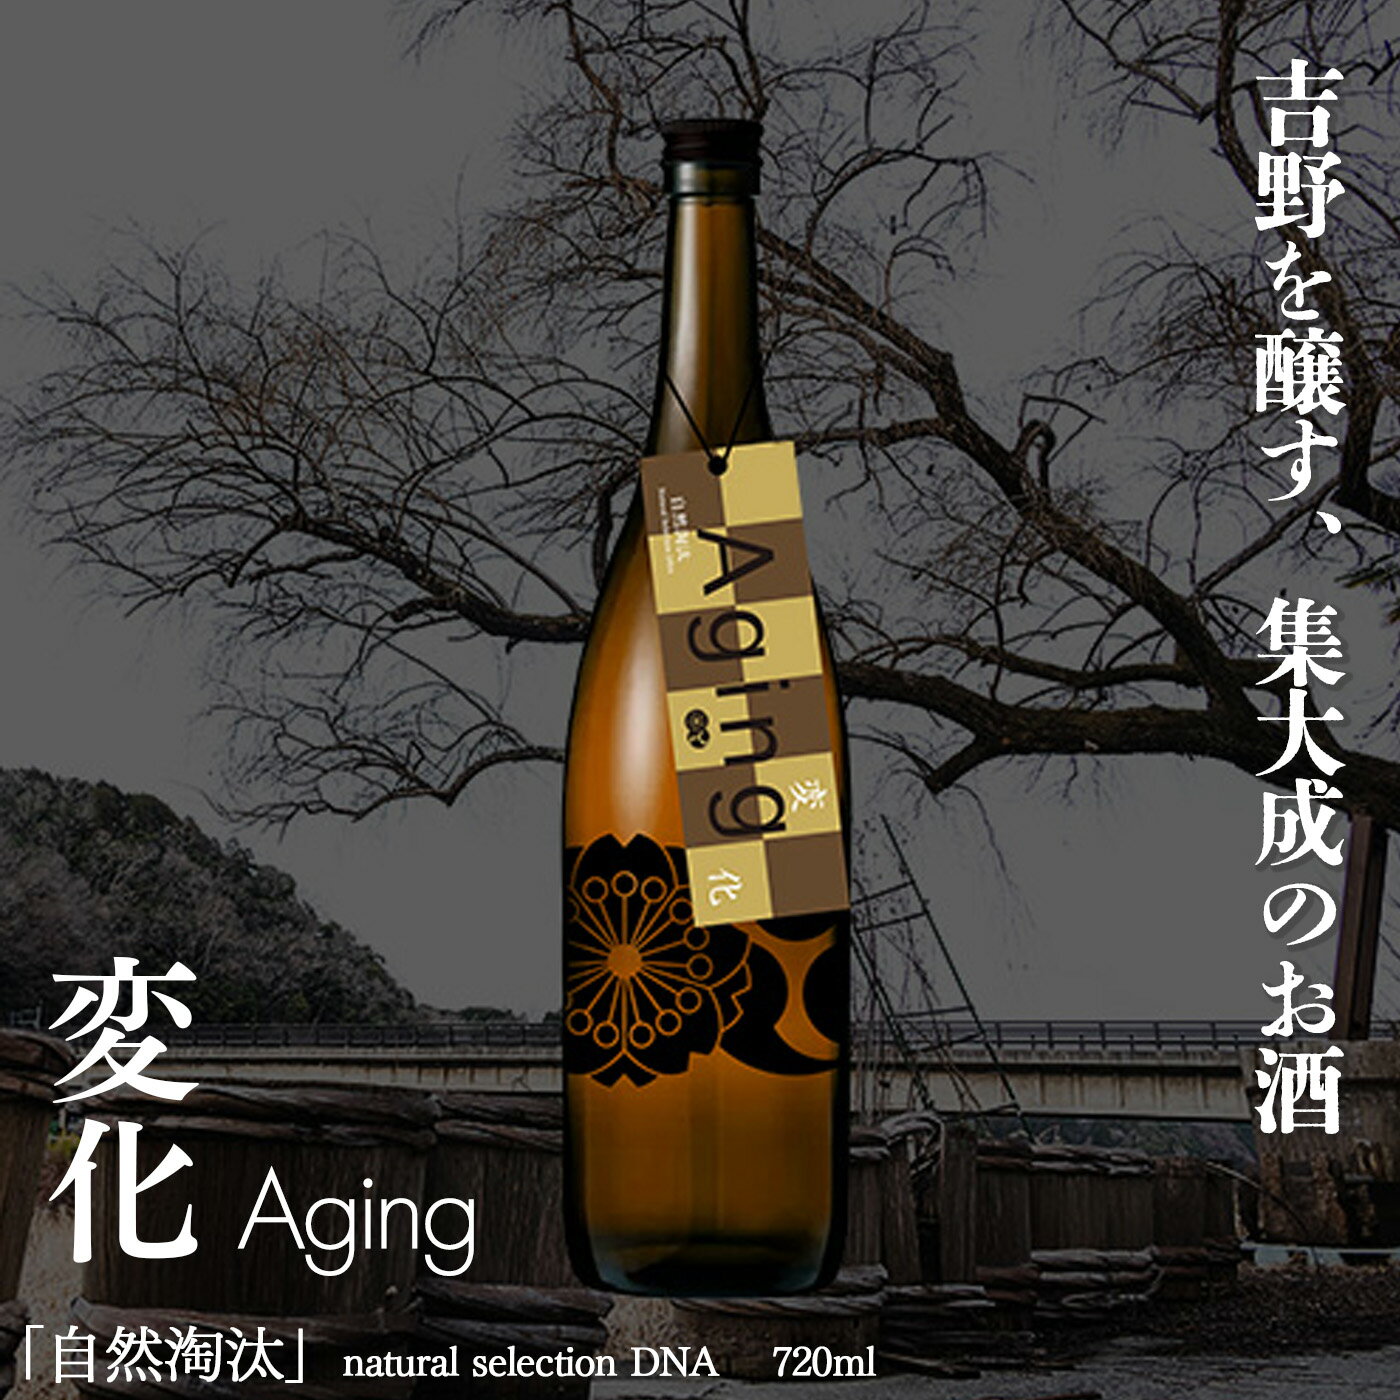 【ふるさと納税】自然淘汰 natural selection DNA Aging 変化” 日本酒 酒 美吉野酒造 奈良県 吉野町